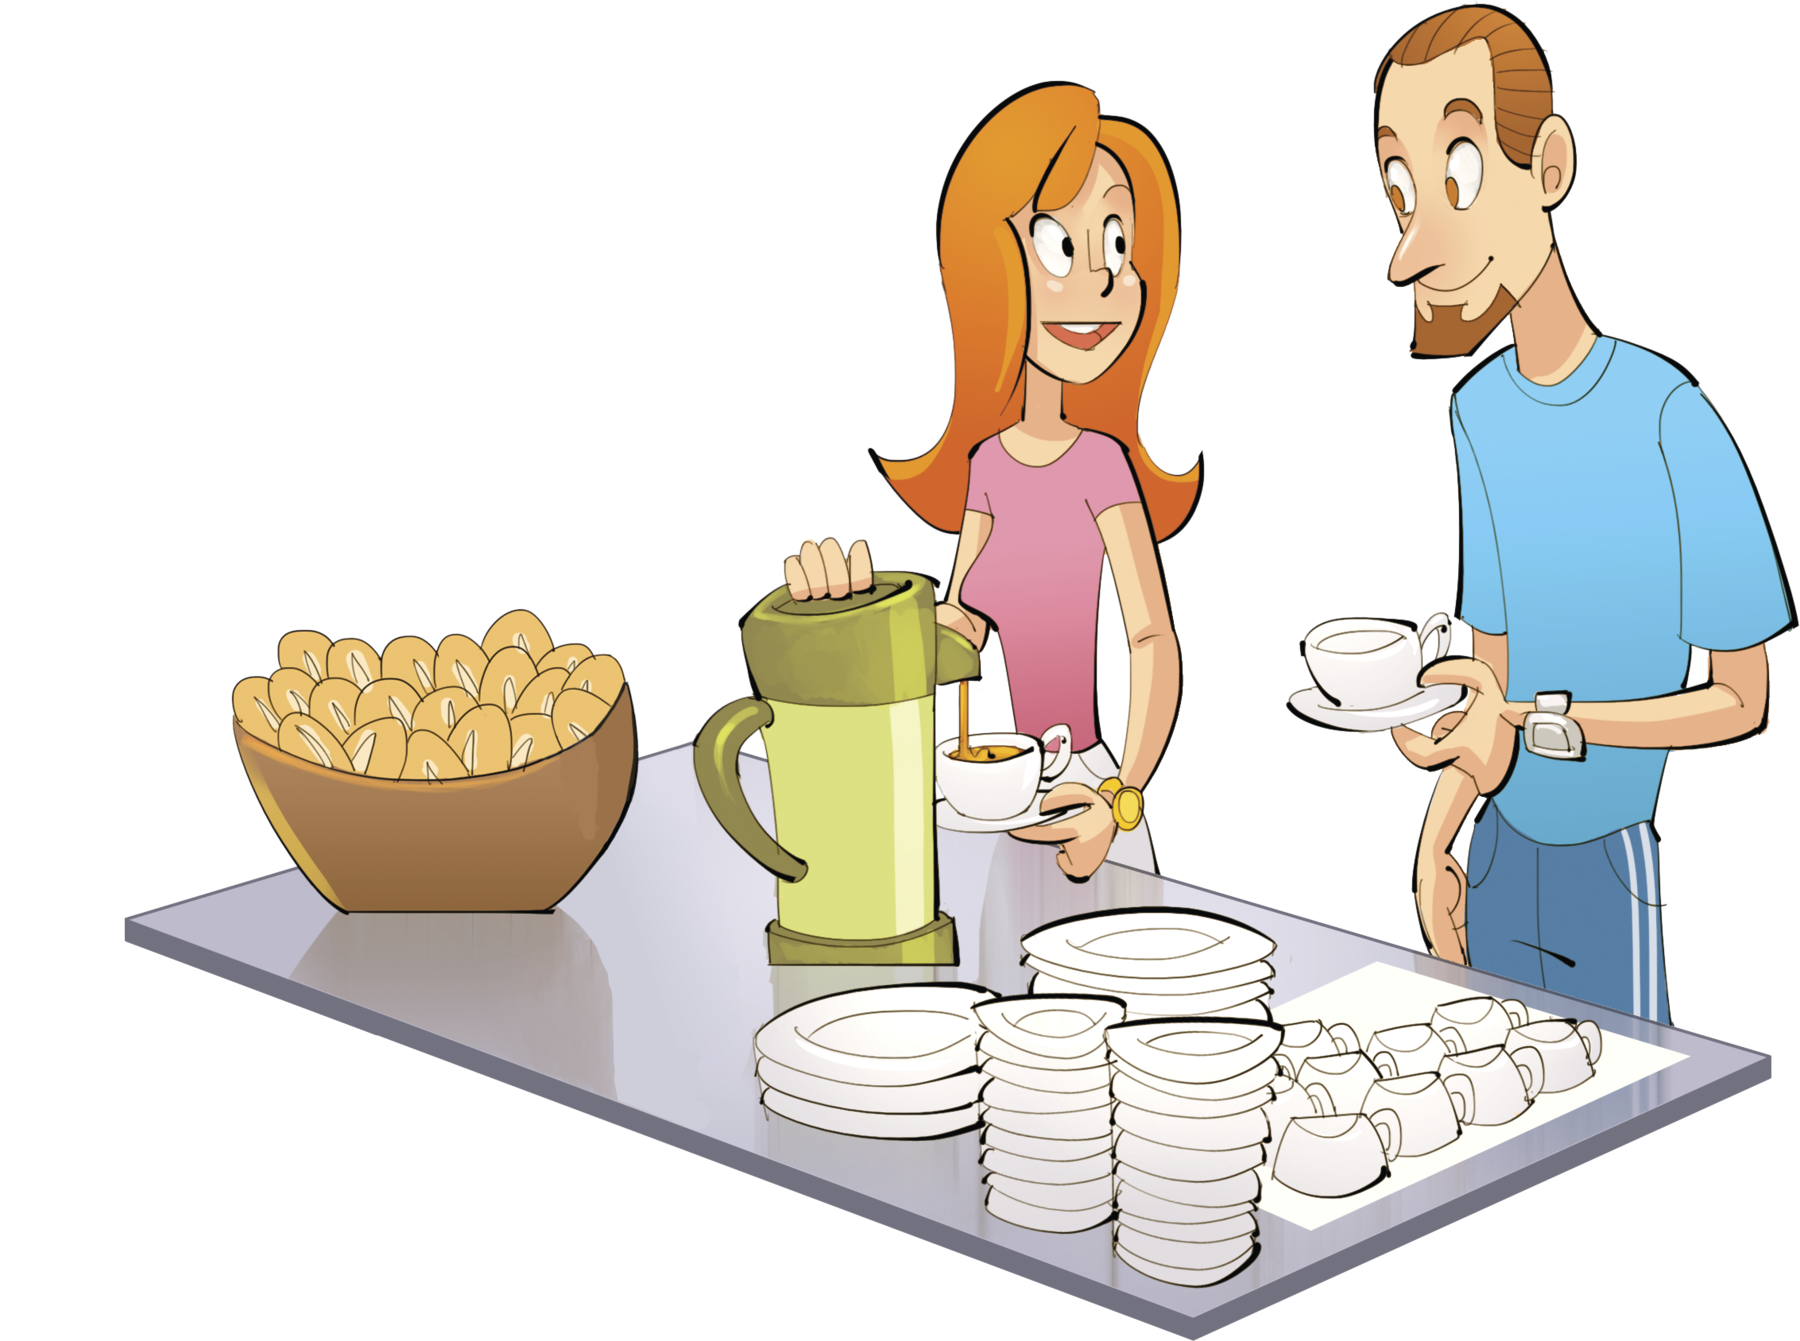 Ilustração. 
1 homem e 1 uma mulher de frente para uma mesa com café, cesta com pães, pratos e xícaras. O homem segura uma xícara.